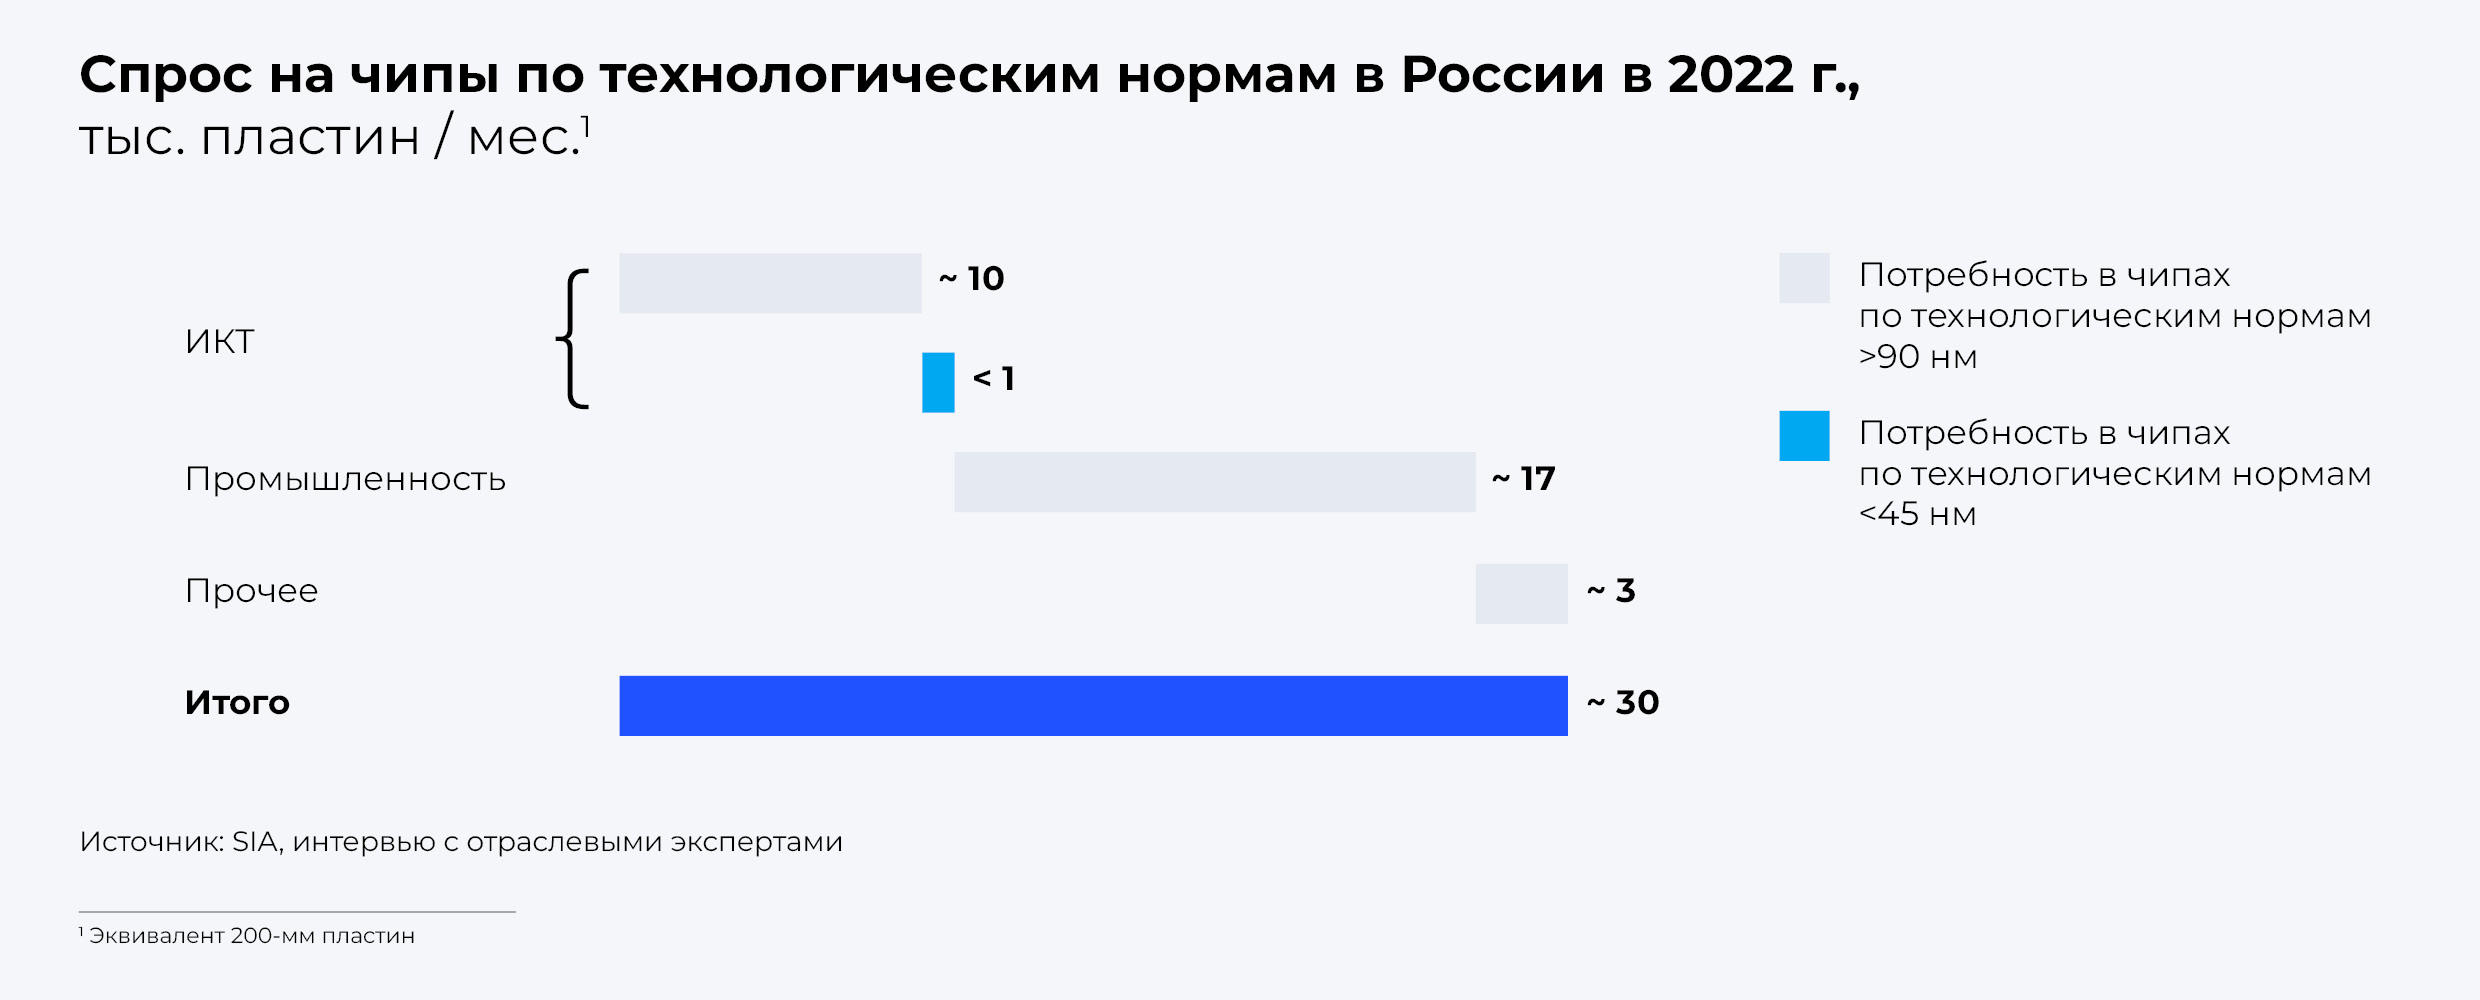 Спрос на чипы по технологическим нормам в России в 2022 г.